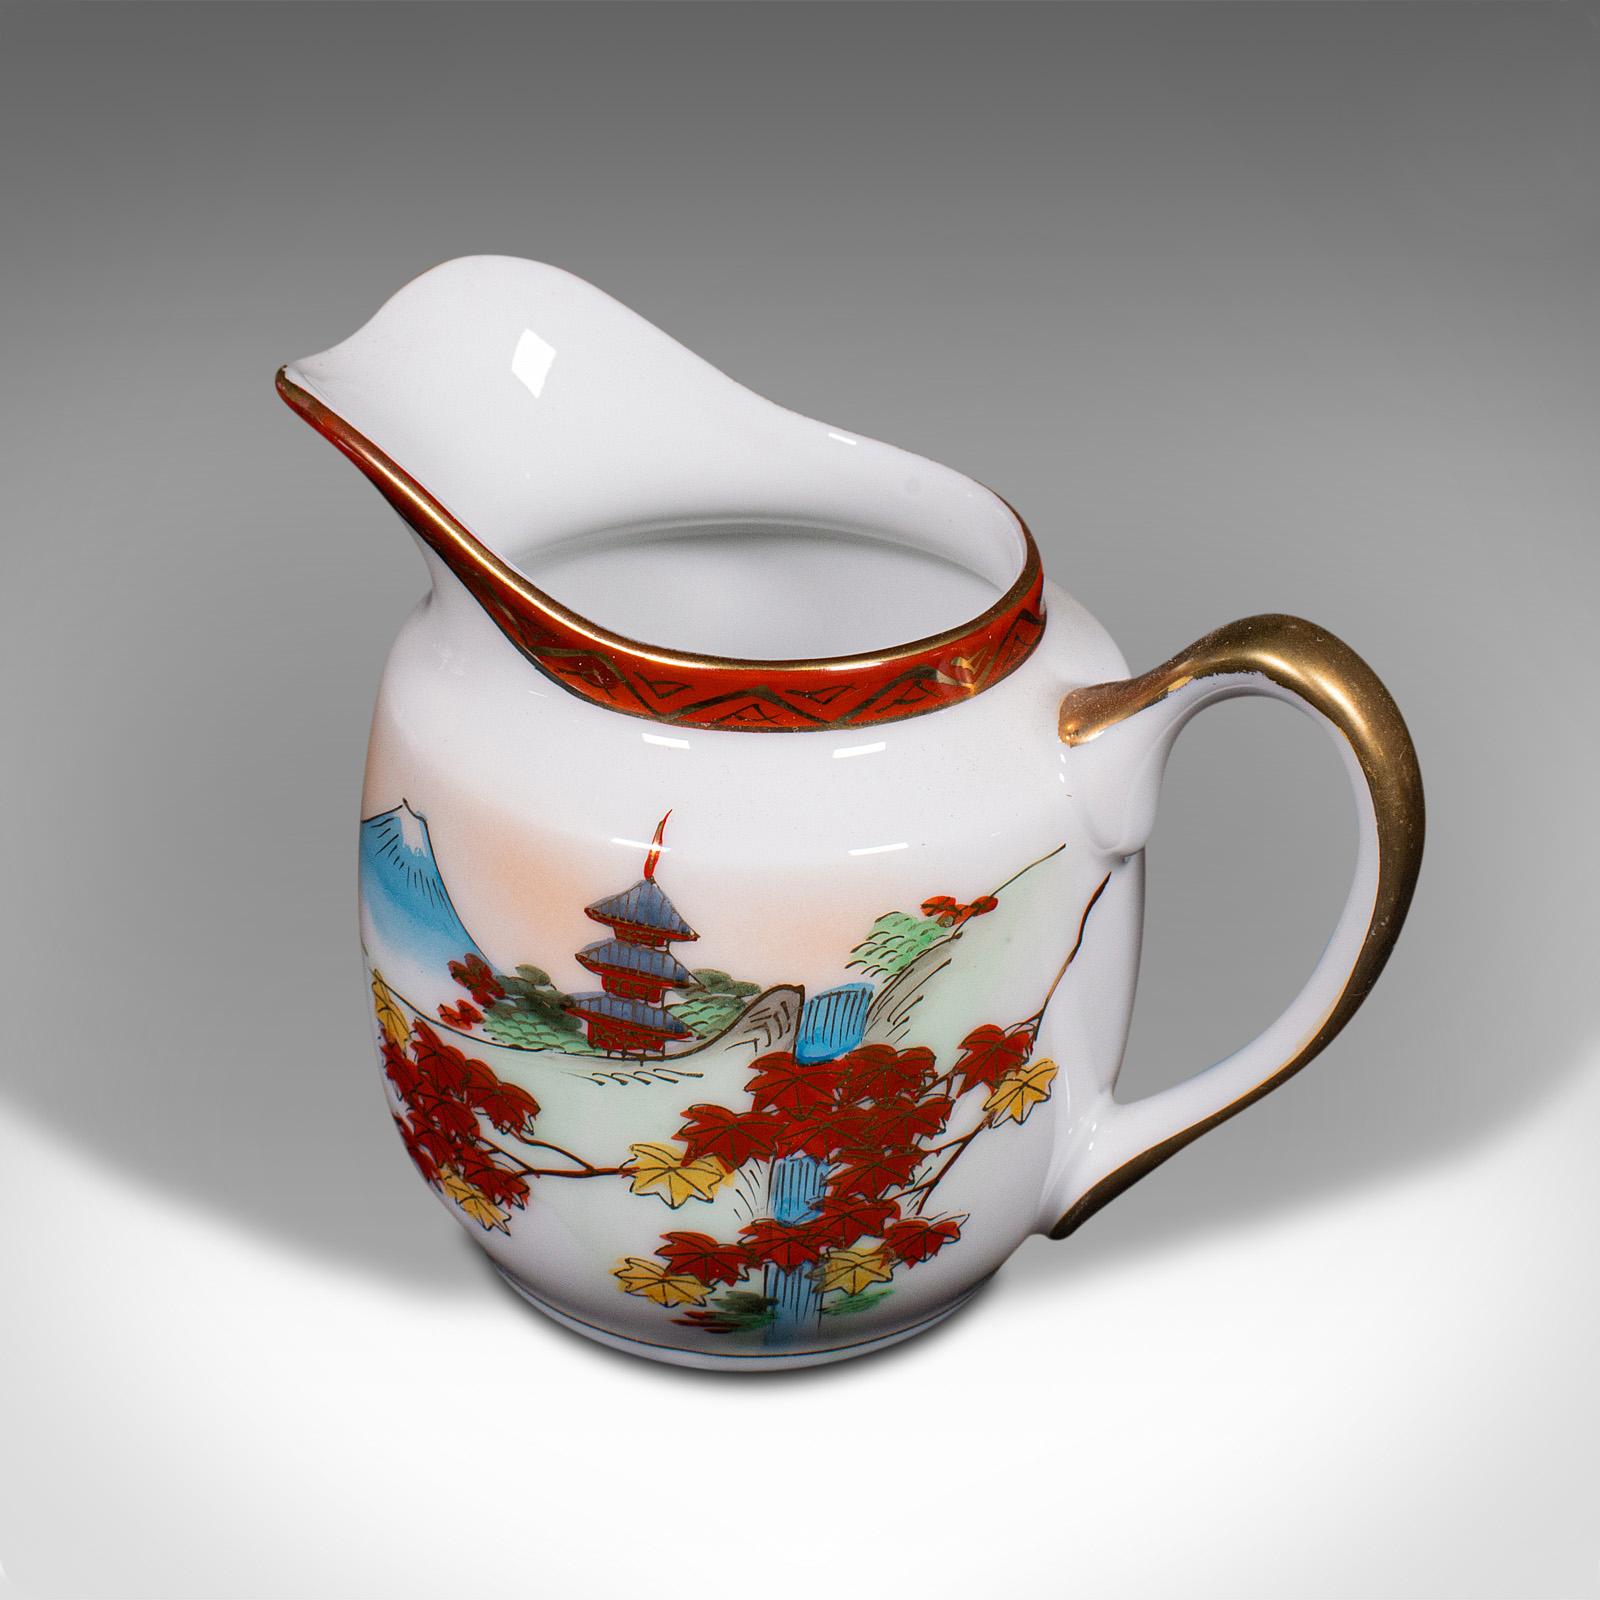 Vintage 4-person Tea Set, Japanese, Ceramic, Teapot, Cups, After Arita, Art Deco For Sale 2